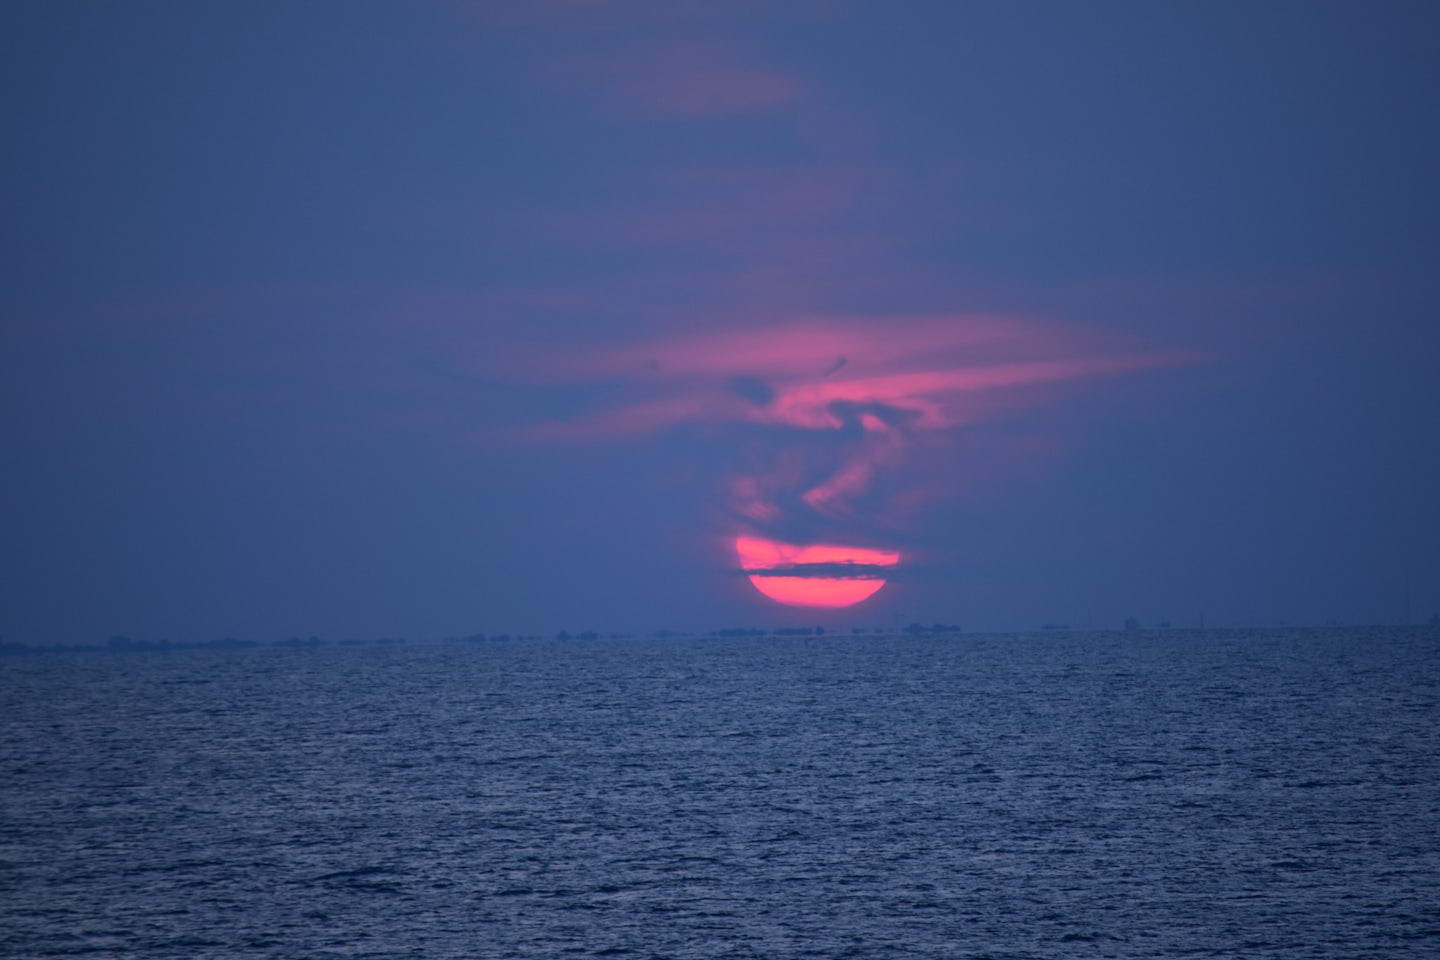 Sunset over the Atlantic ocean